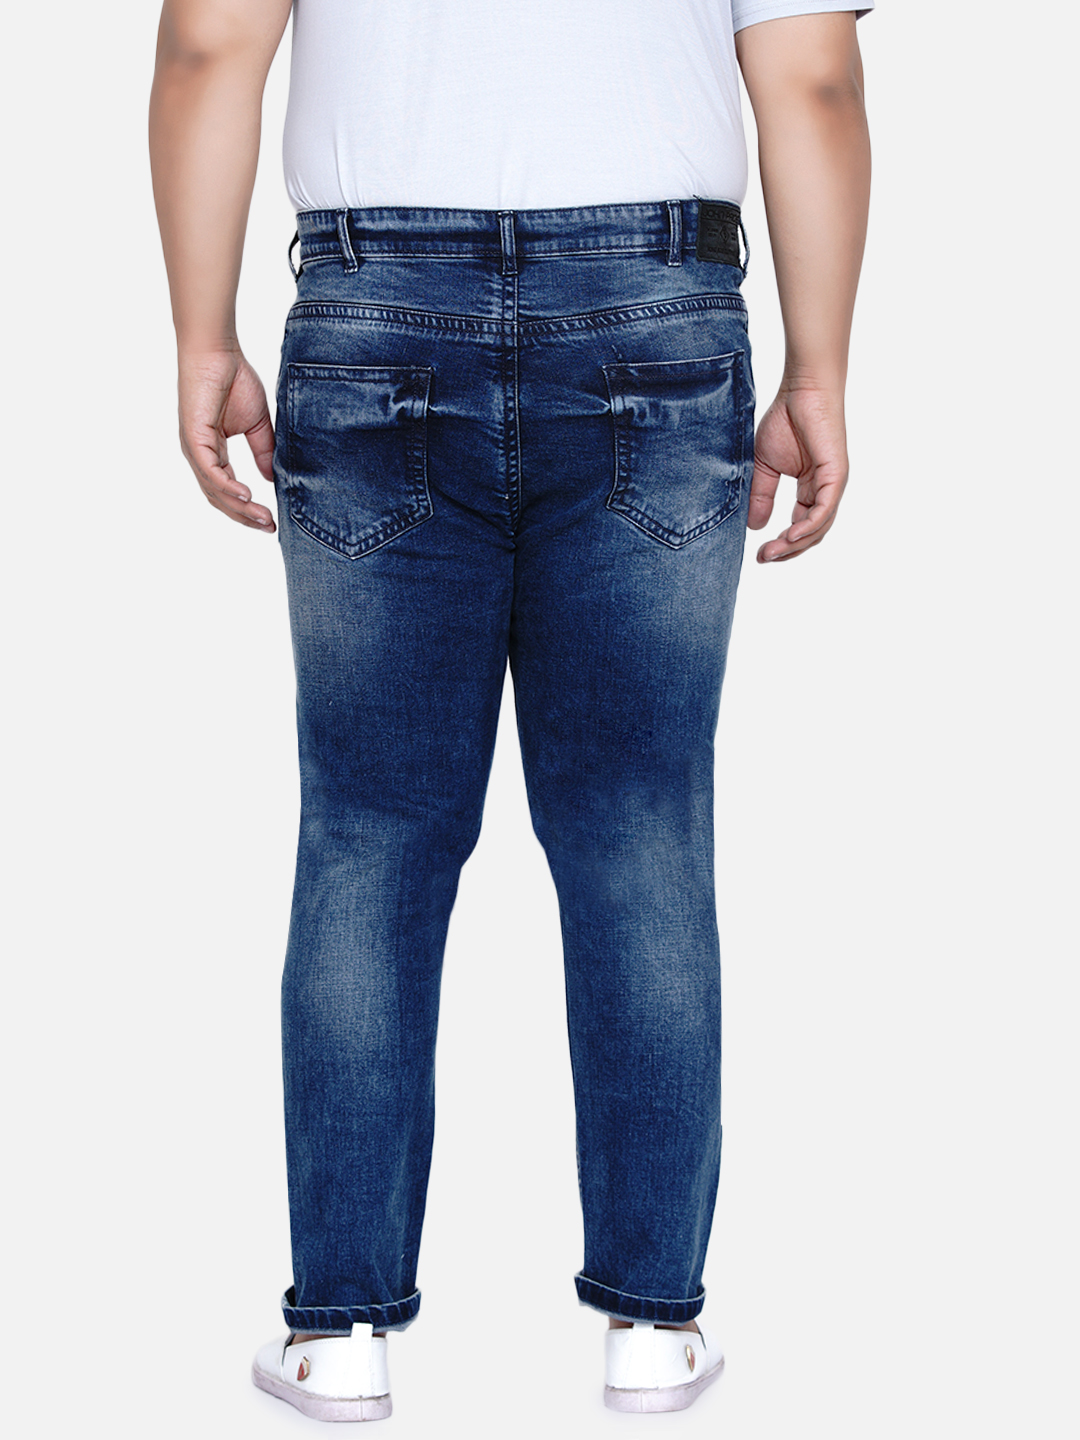 bottomwear/jeans/JPJ12185/jpj12185-6.jpg